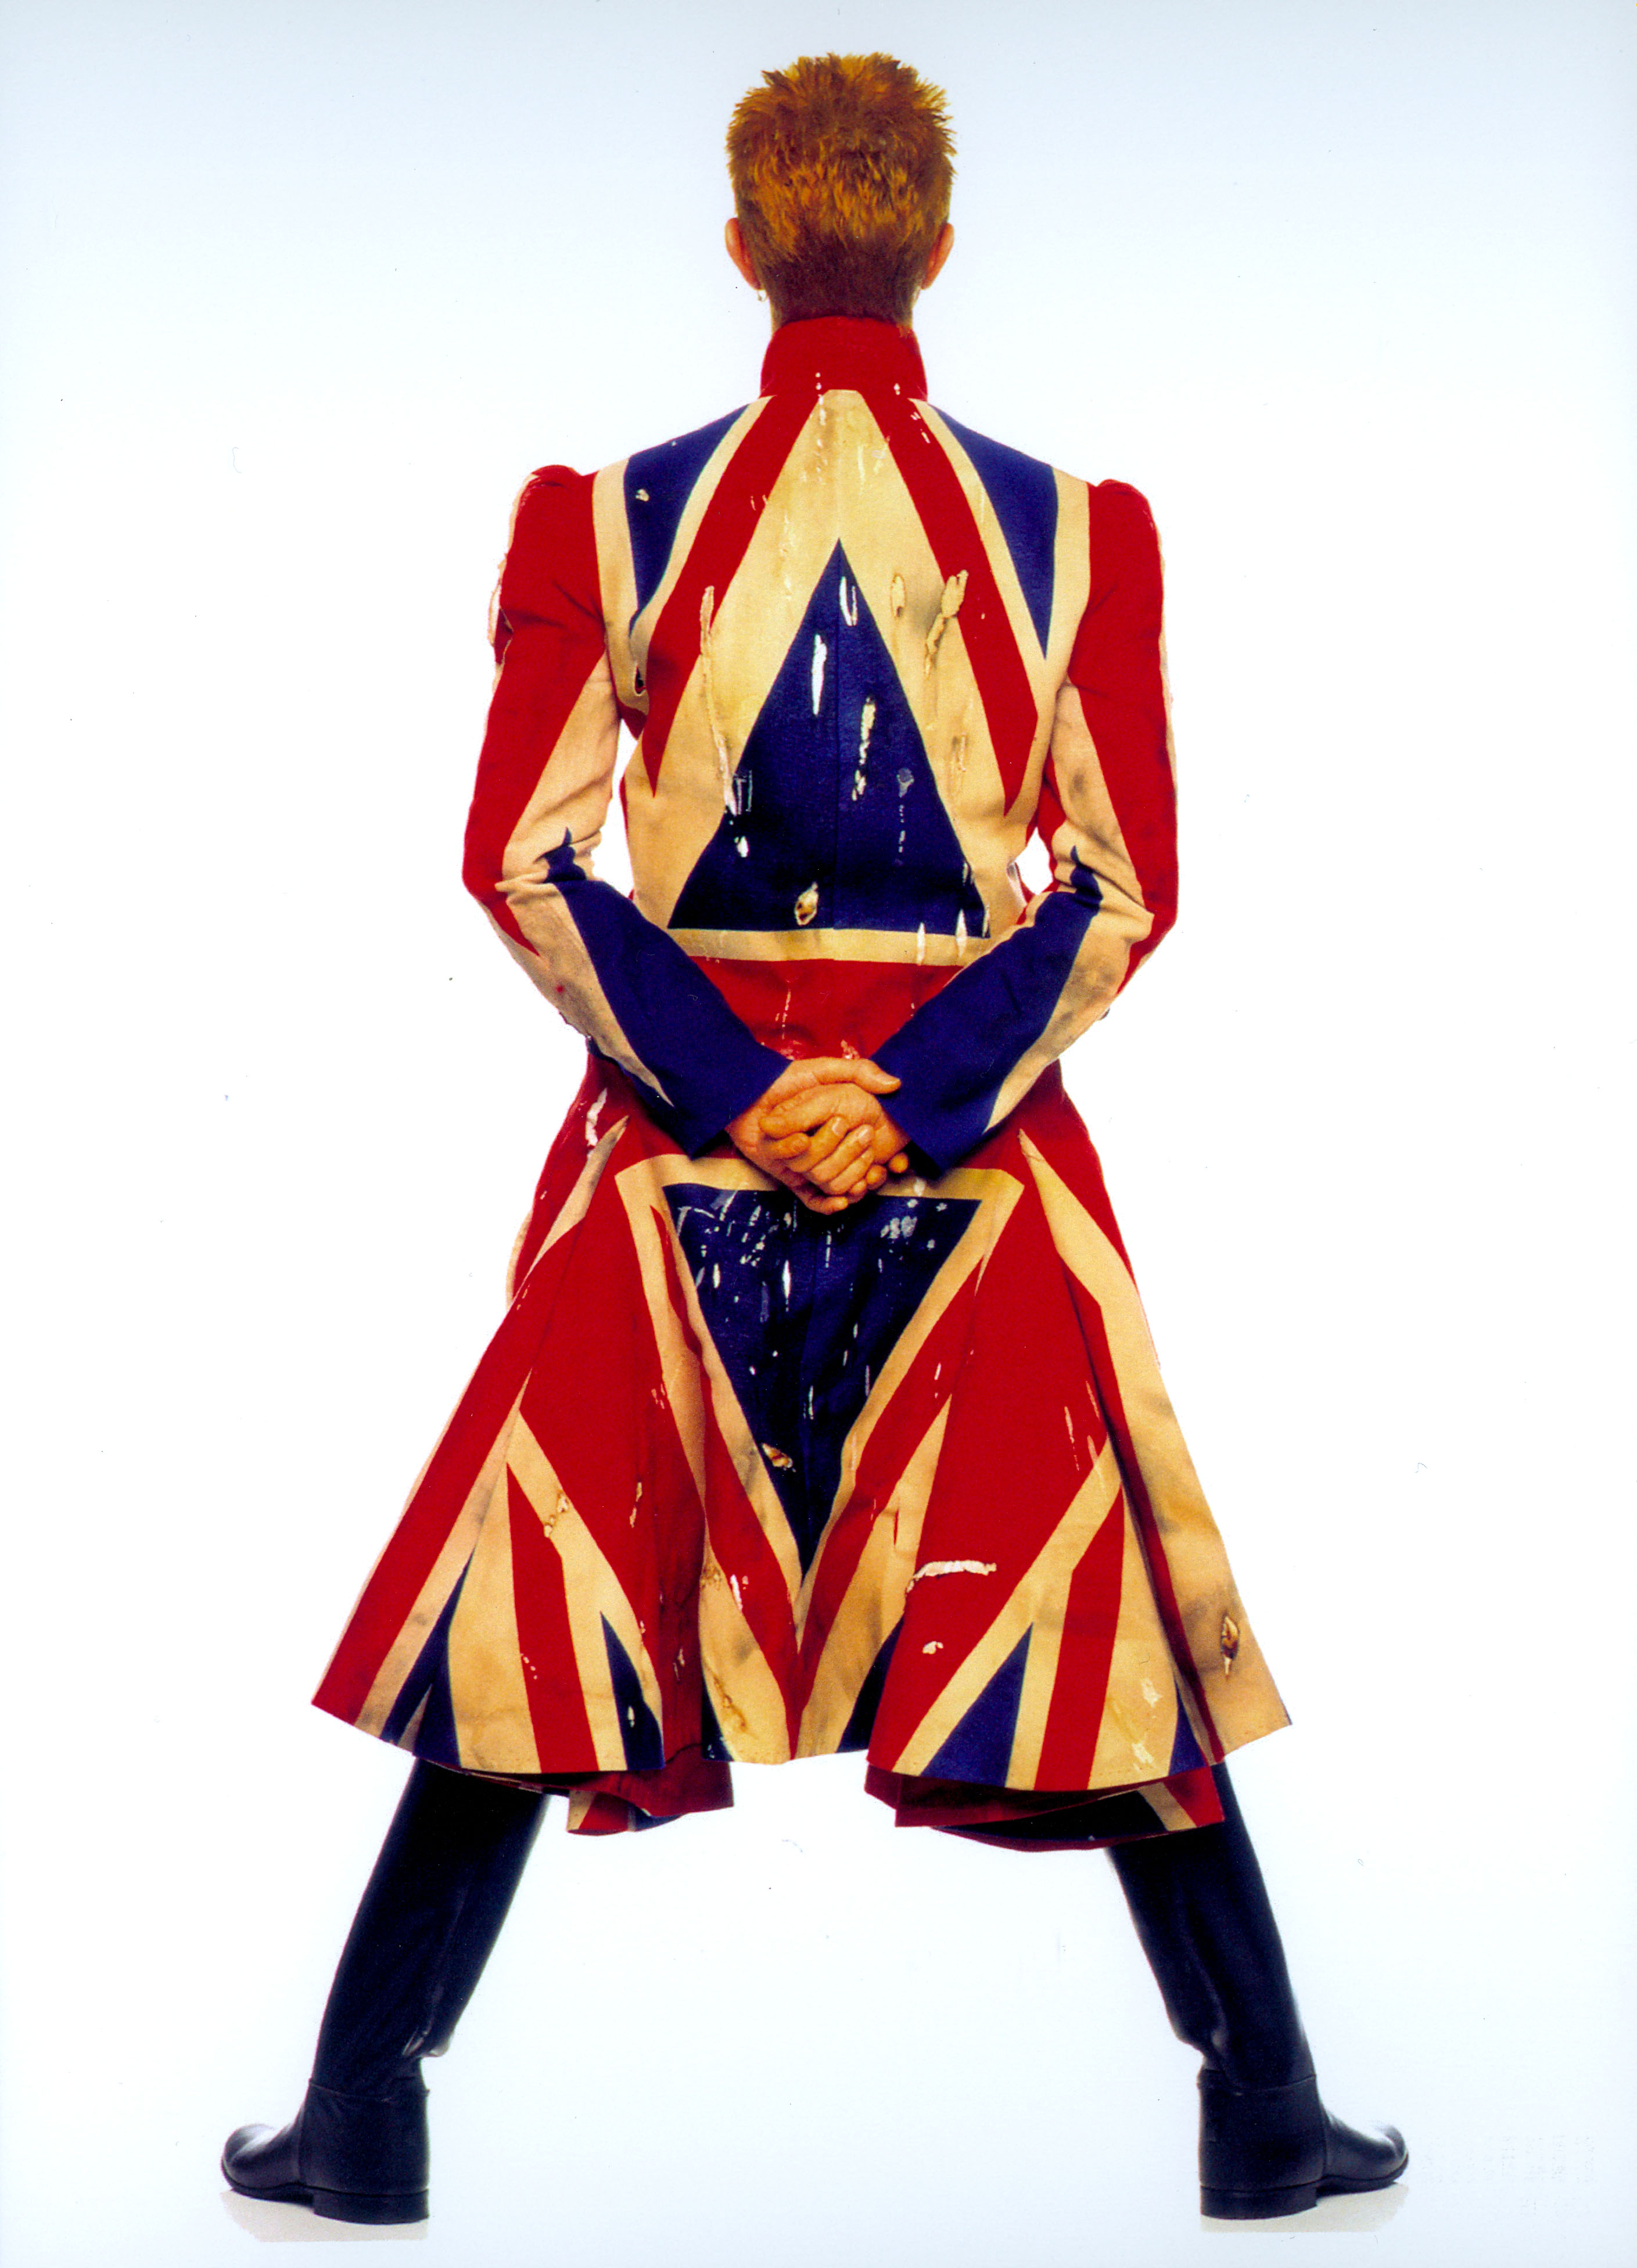 TRENCH COAT COM A BANDEIRA DA INGLATERRA USADO NA TURNÊ DO ÁLBUM “EARTHLING” (1997) Provando o bom exemplo de Homem Inglês que é, em momento ufanista chic vestindo um casaco assinado pelo estilista Alexander McQueen! Assim como Bowie, a Inglaterra personifica naturalmente extravagância & exuberância.